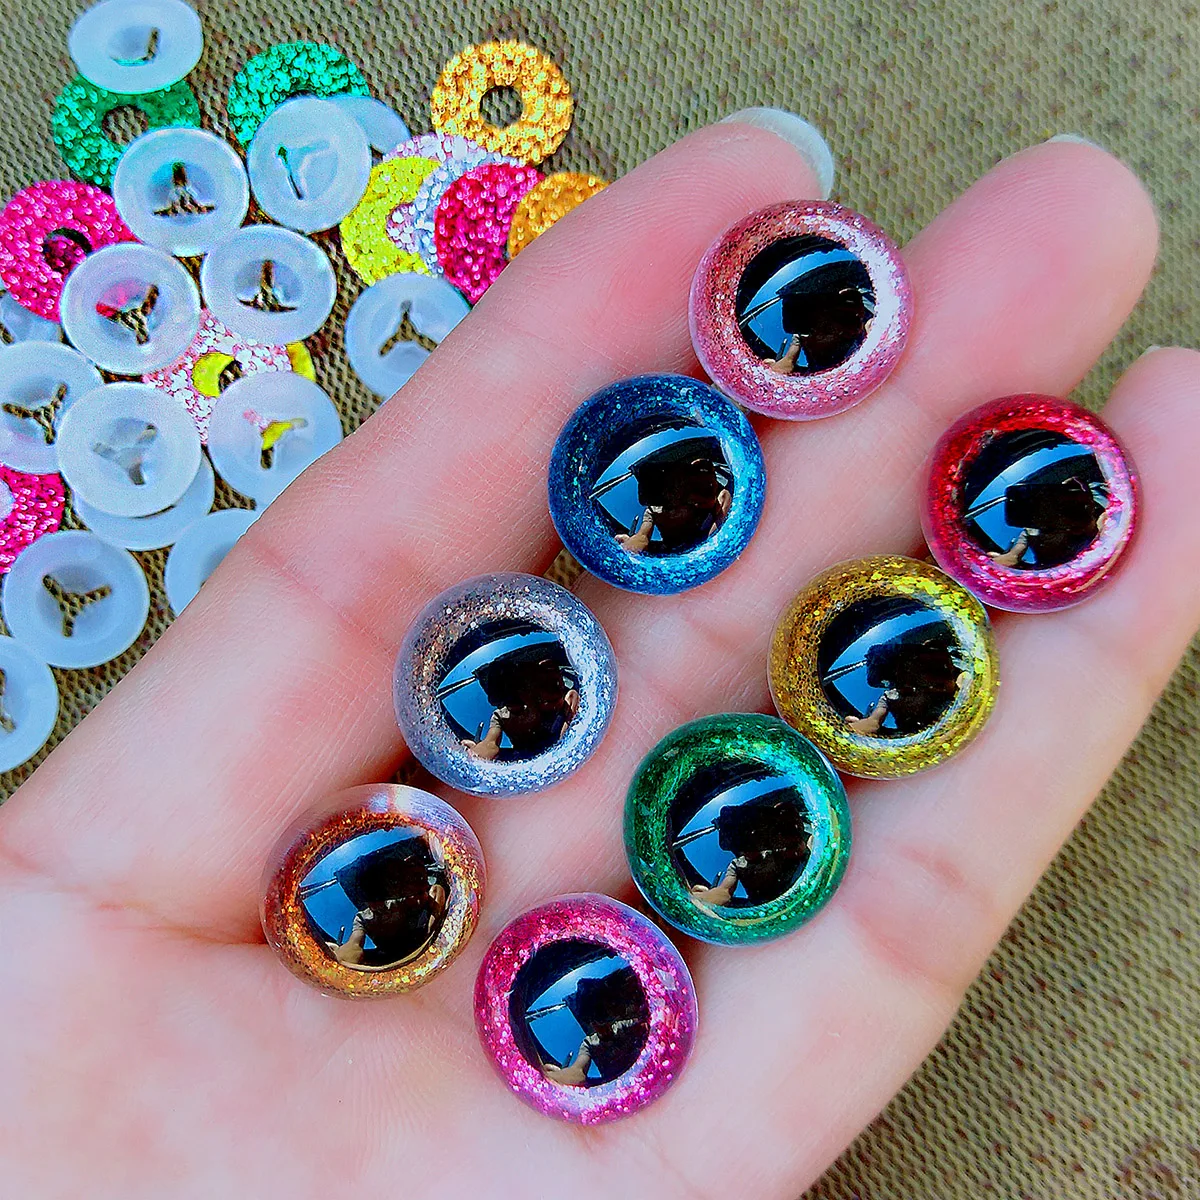 20pcs 3D Plastic Glitter Safety Eyes For Crochet Toys Amigurumi Diy Mix ... - $10.20+